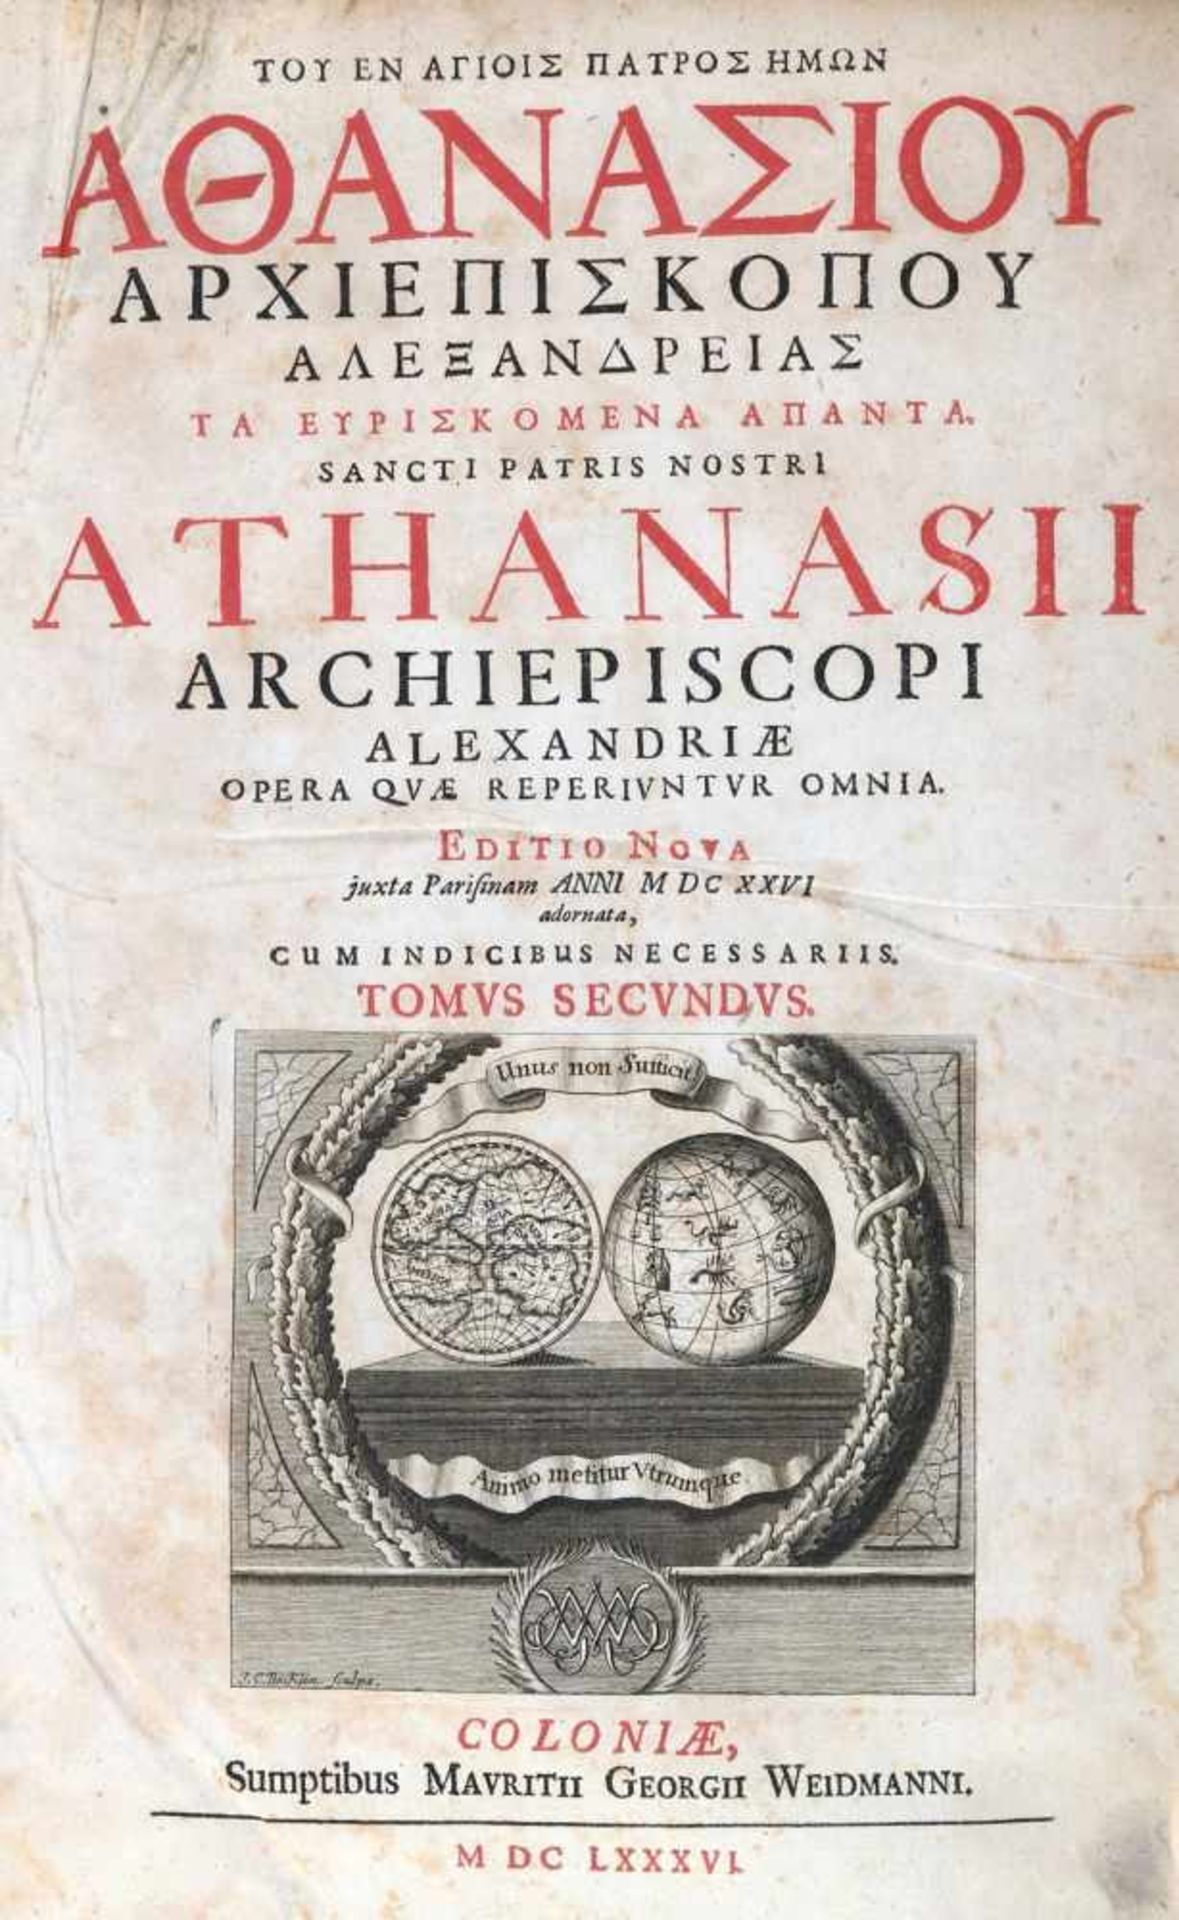 Athanasius Alexandrinus.Opera quae reperiuntur omnia. Editio nova...cum indicibus necessariis.